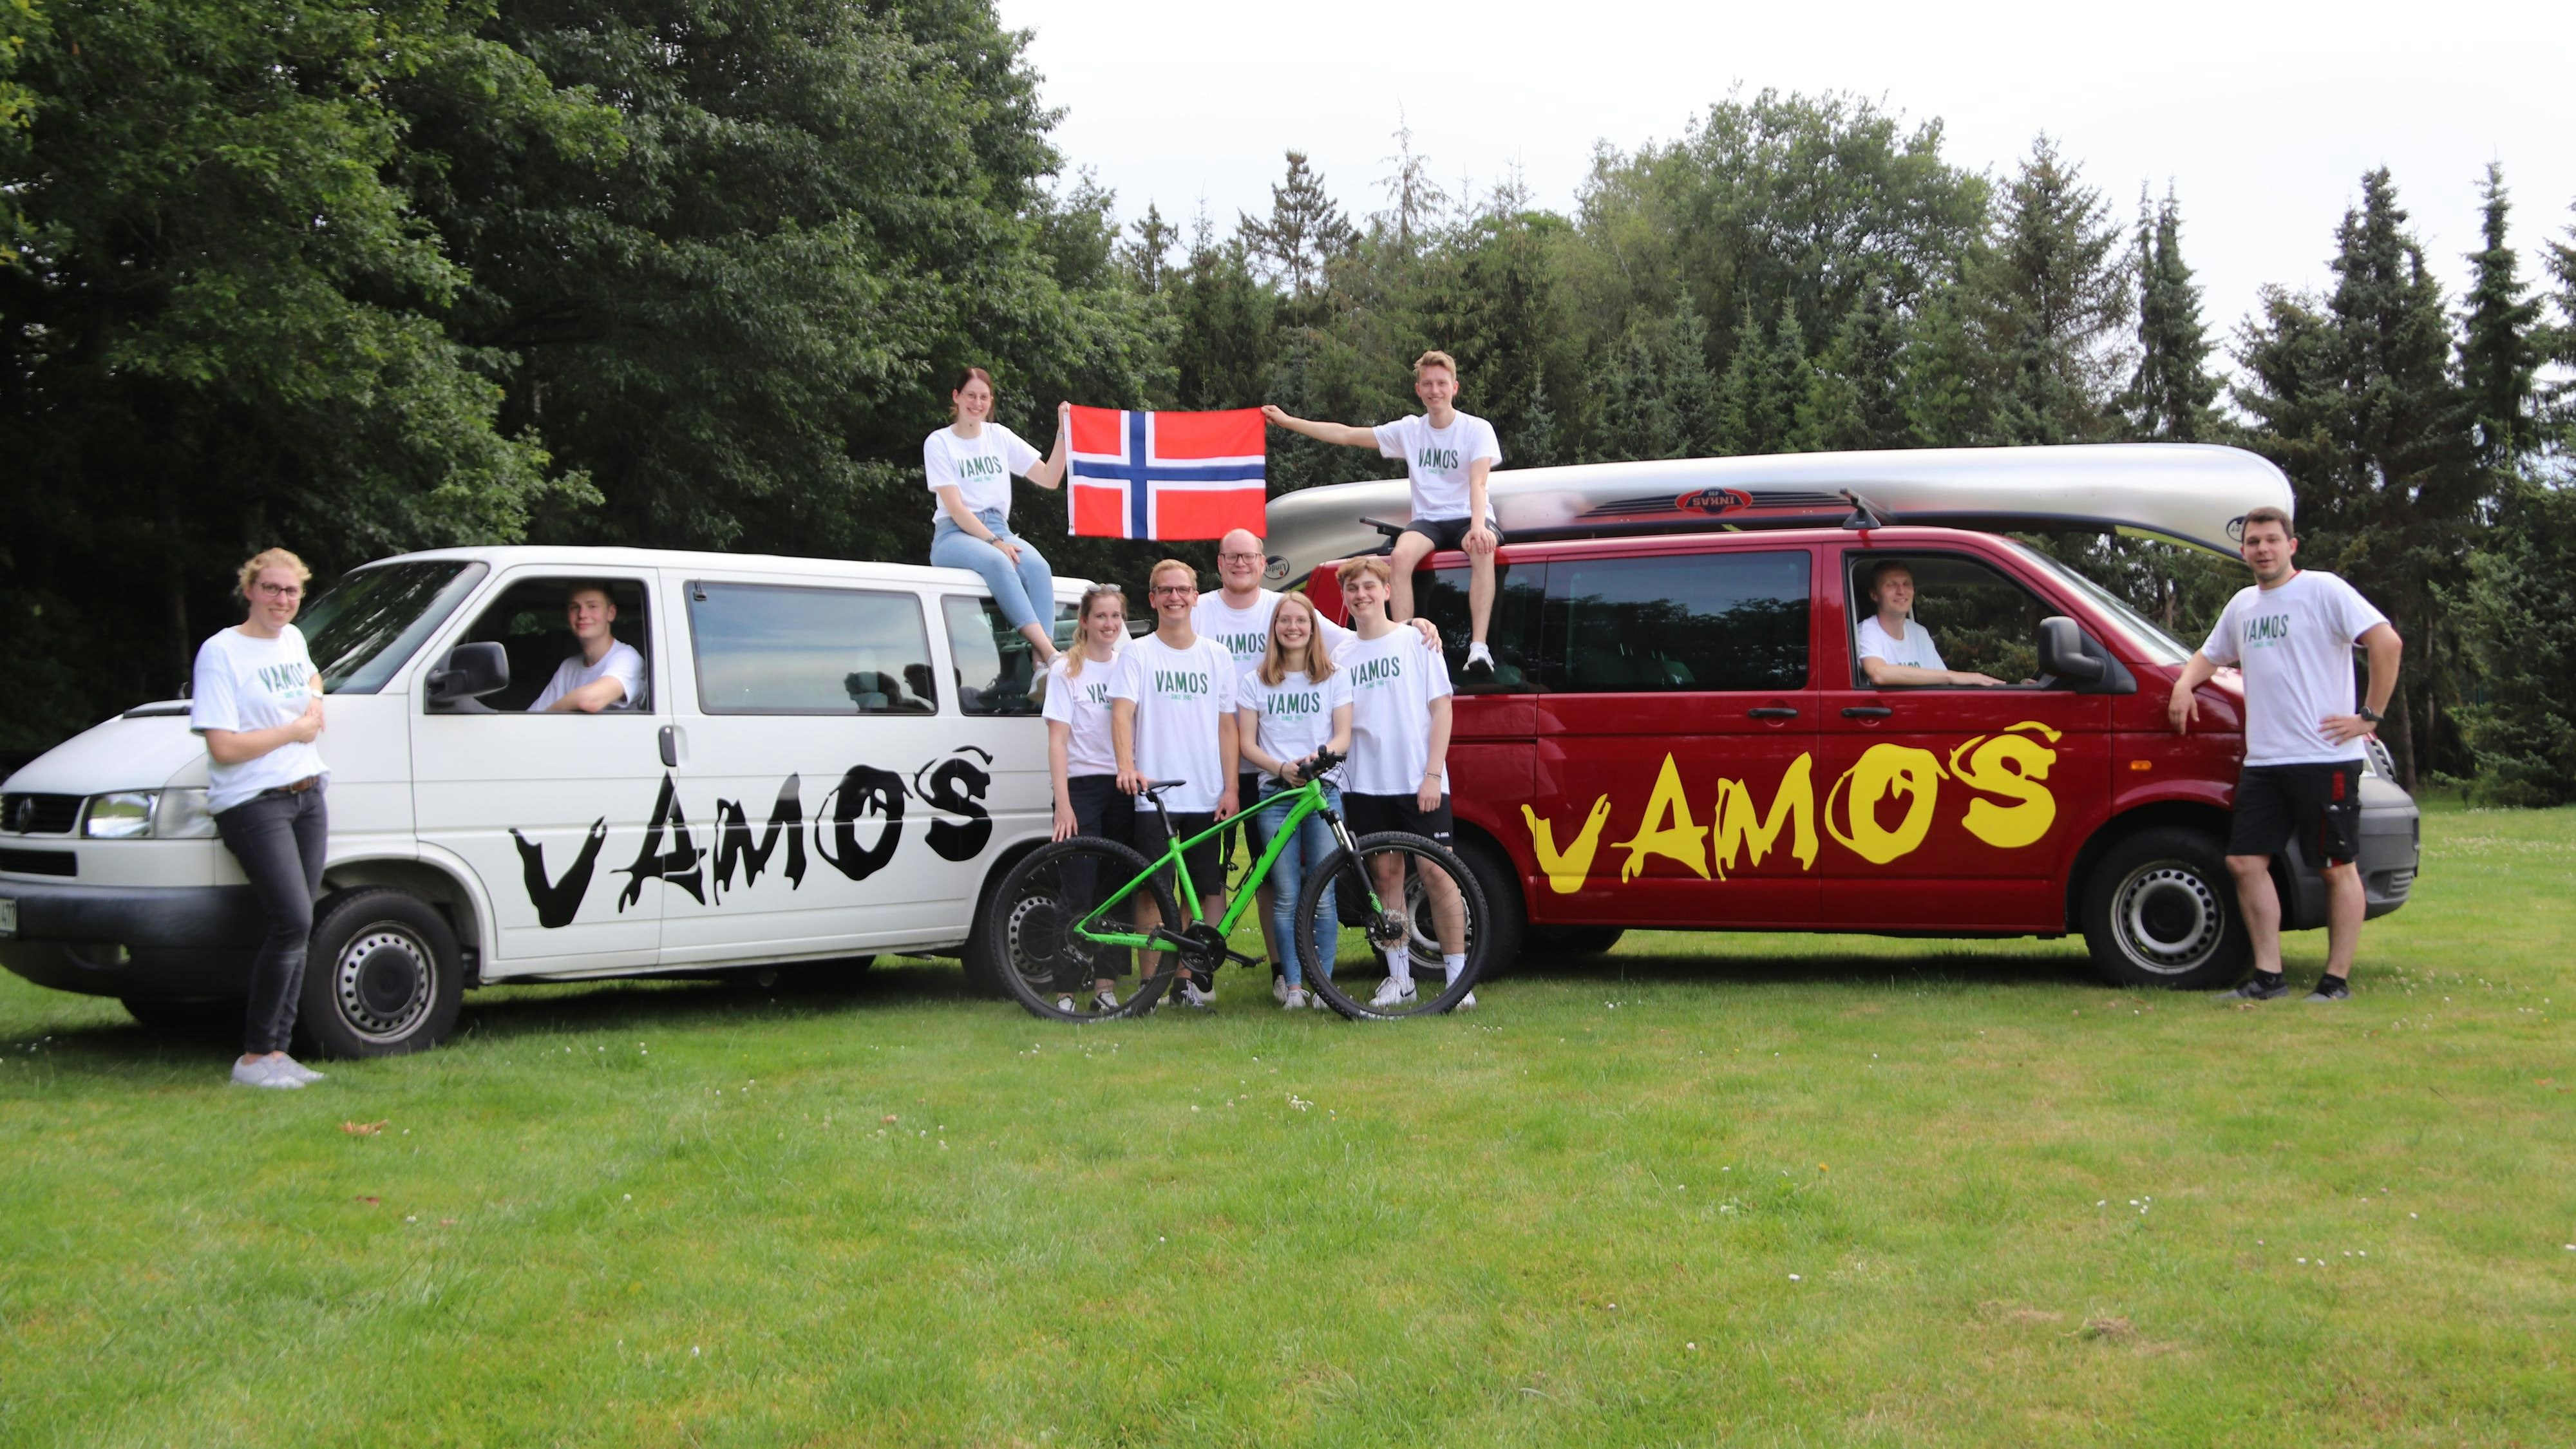 40 Jahre Vamos: An diesem Samstag startet die Jubiläumsfahrt nach Norwegen mit rund 100 Personen, einem Bus und sechs Bullis, von denen zwei jetzt auch den Vamos-Schriftzug tragen. Foto: Bolten